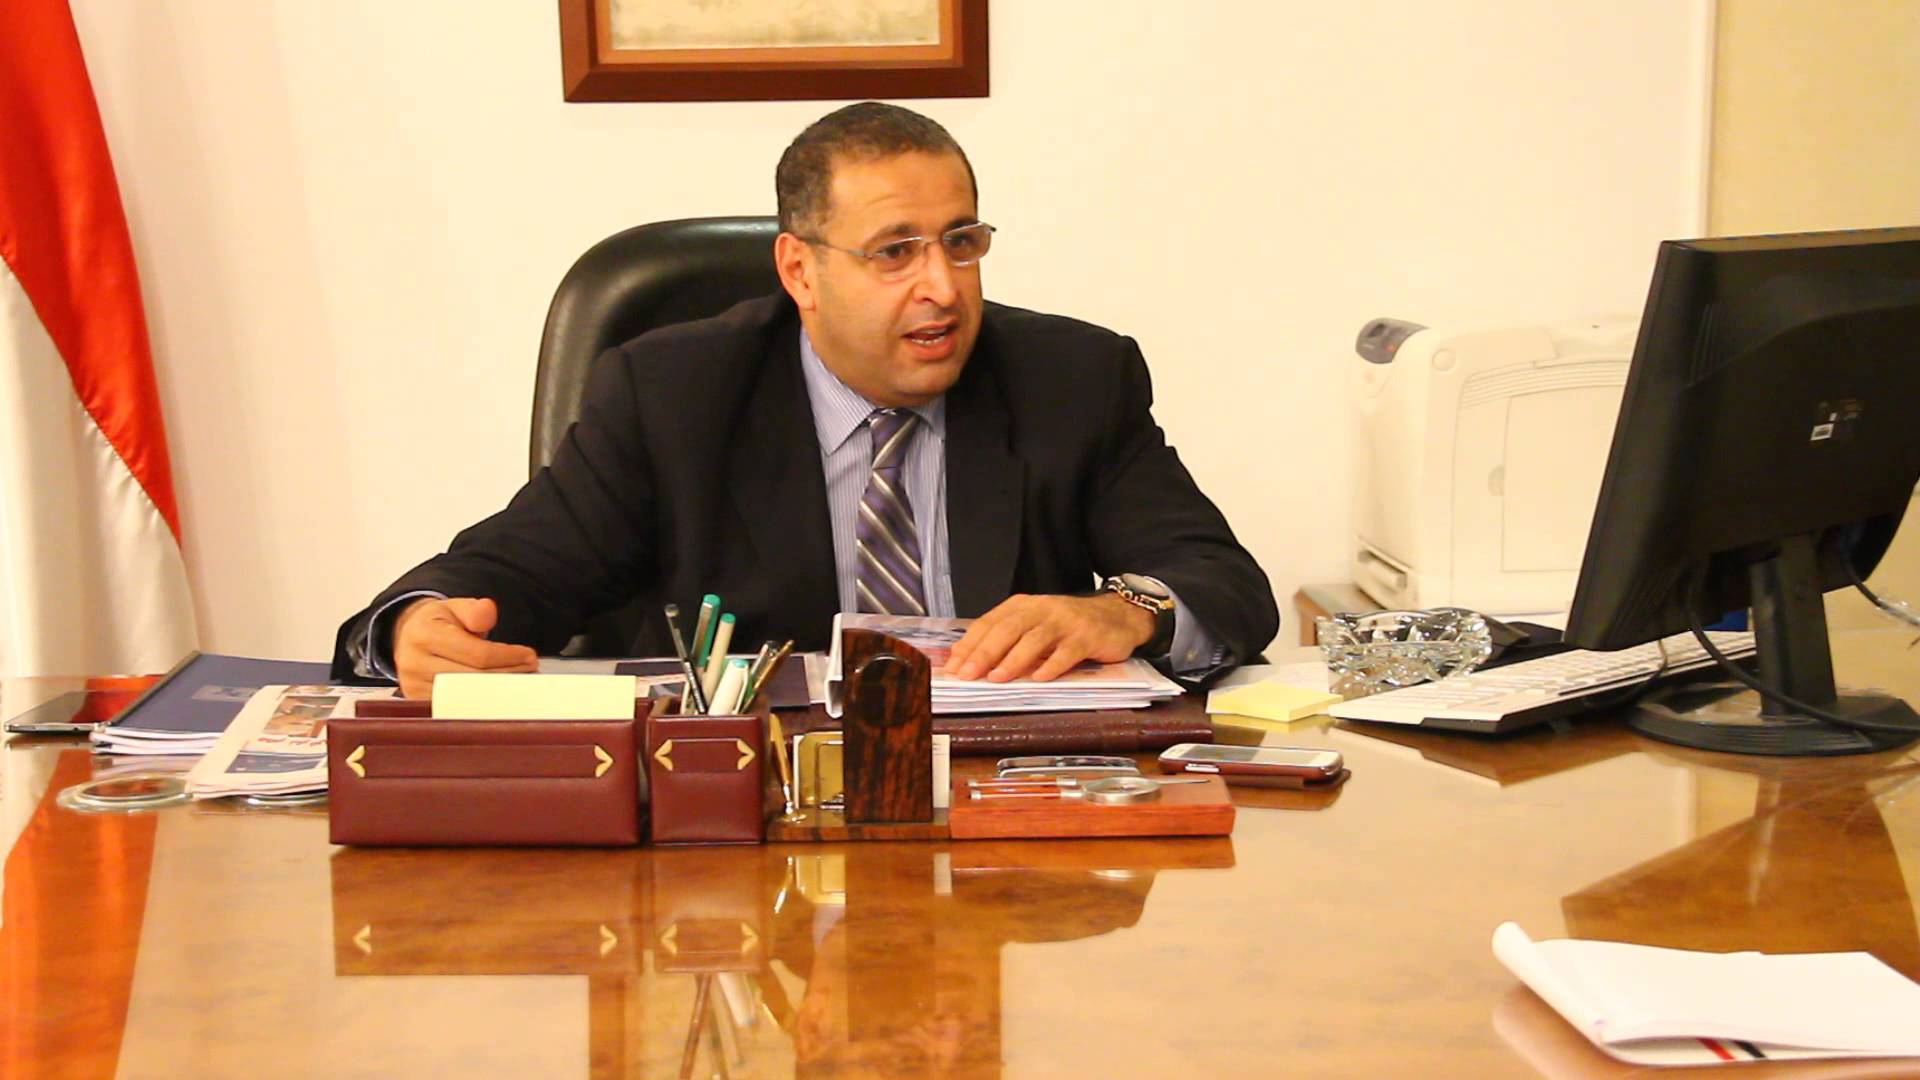 
Министр инвестиций Египта: необходимо 18 месяцев для подготовки "одного окна"